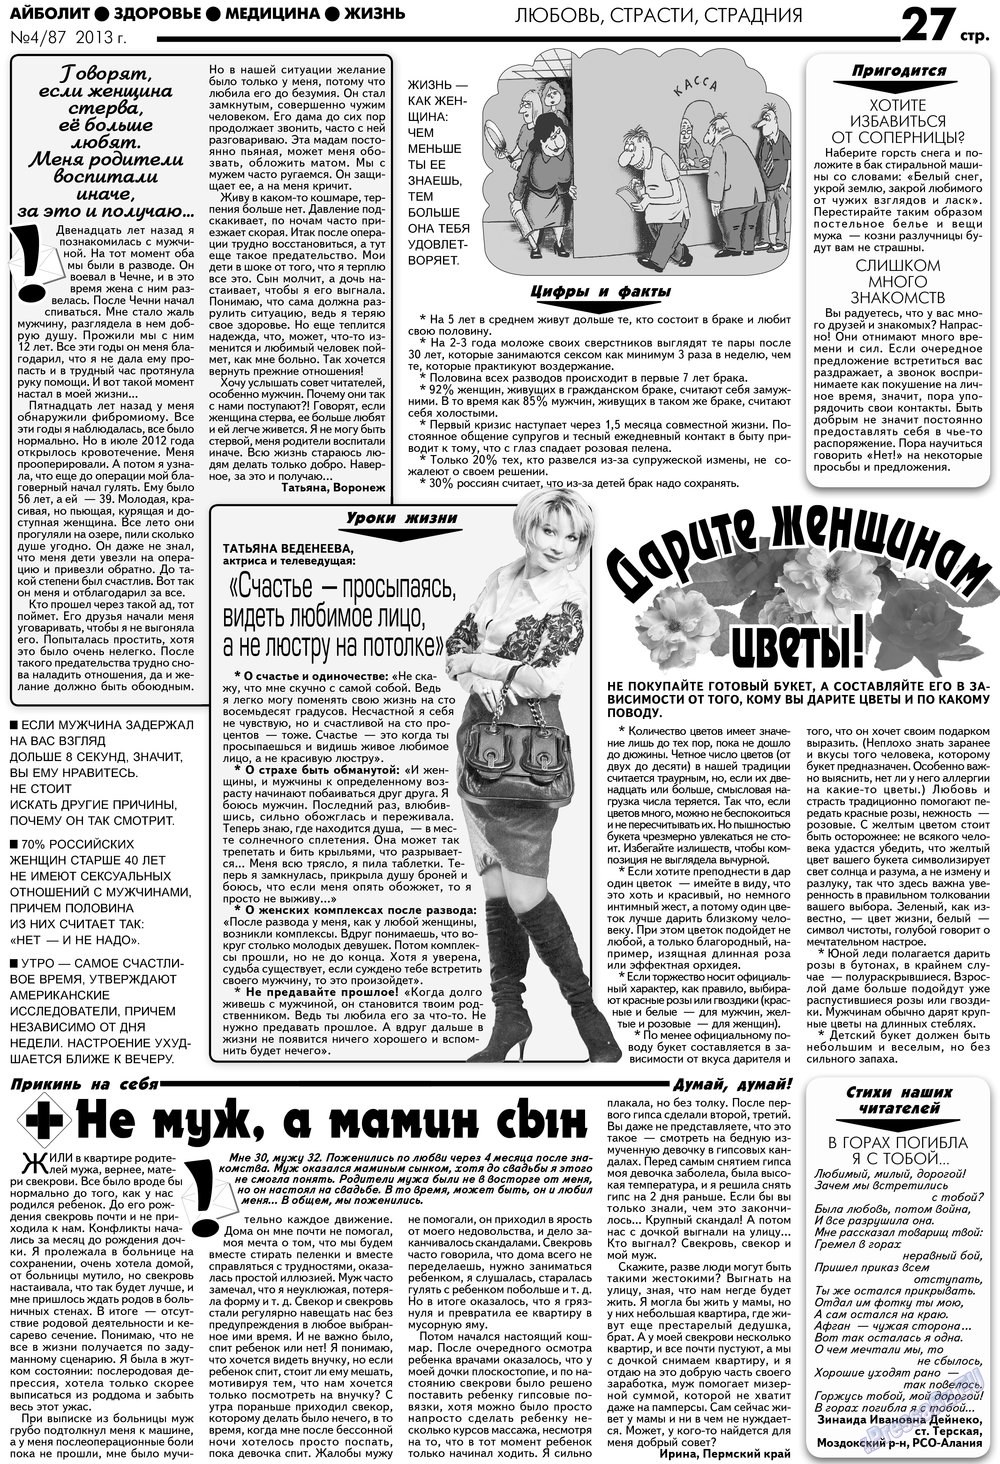 АйБолит, газета. 2013 №4 стр.27